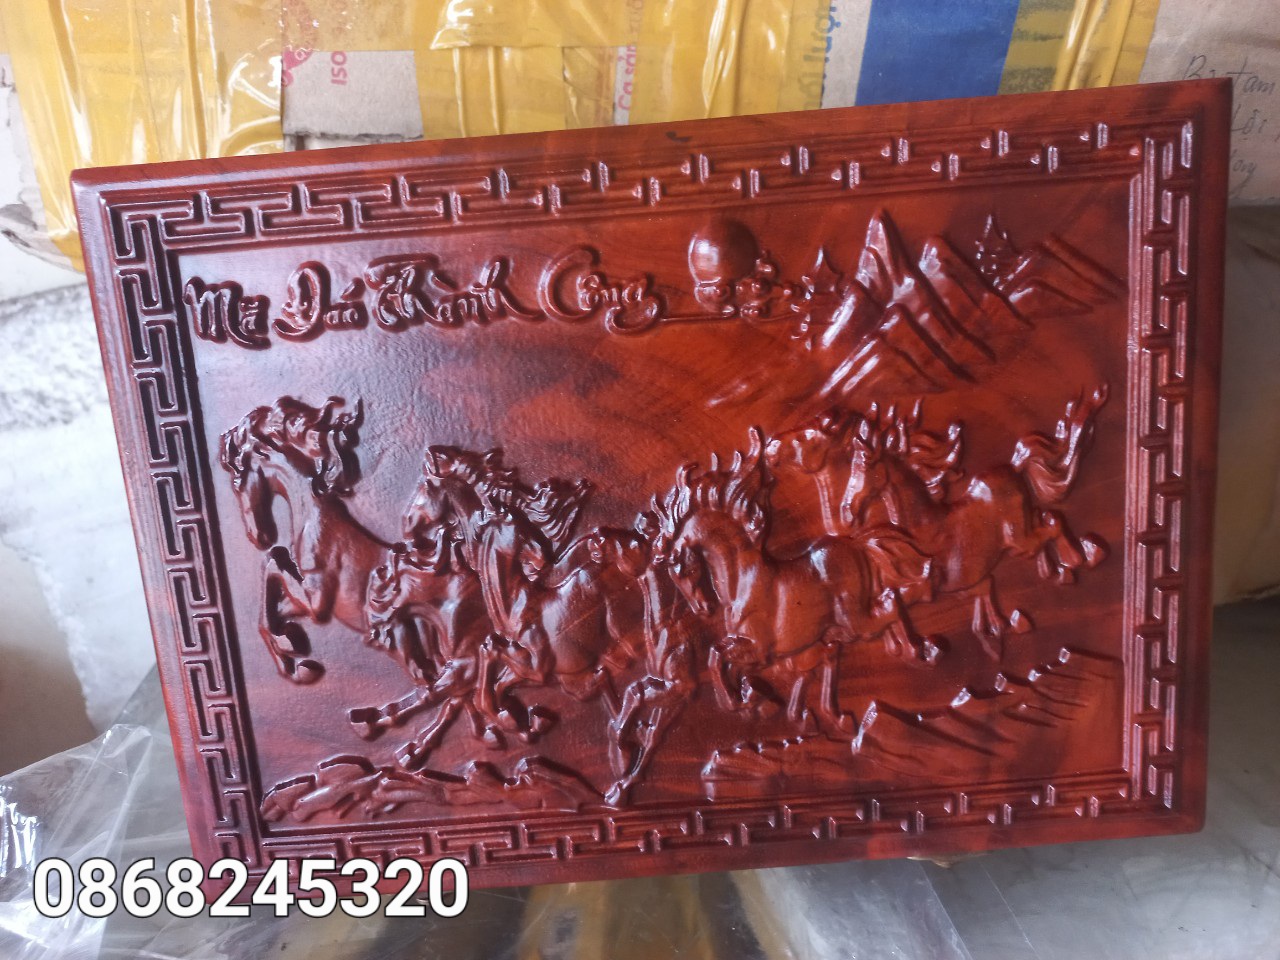 Quân cờ tướng gỗ trắc kt 4.5×1.6cm+hộp đựng quân gỗ hương khắc mã đáo thành công kt 28×20×7cm